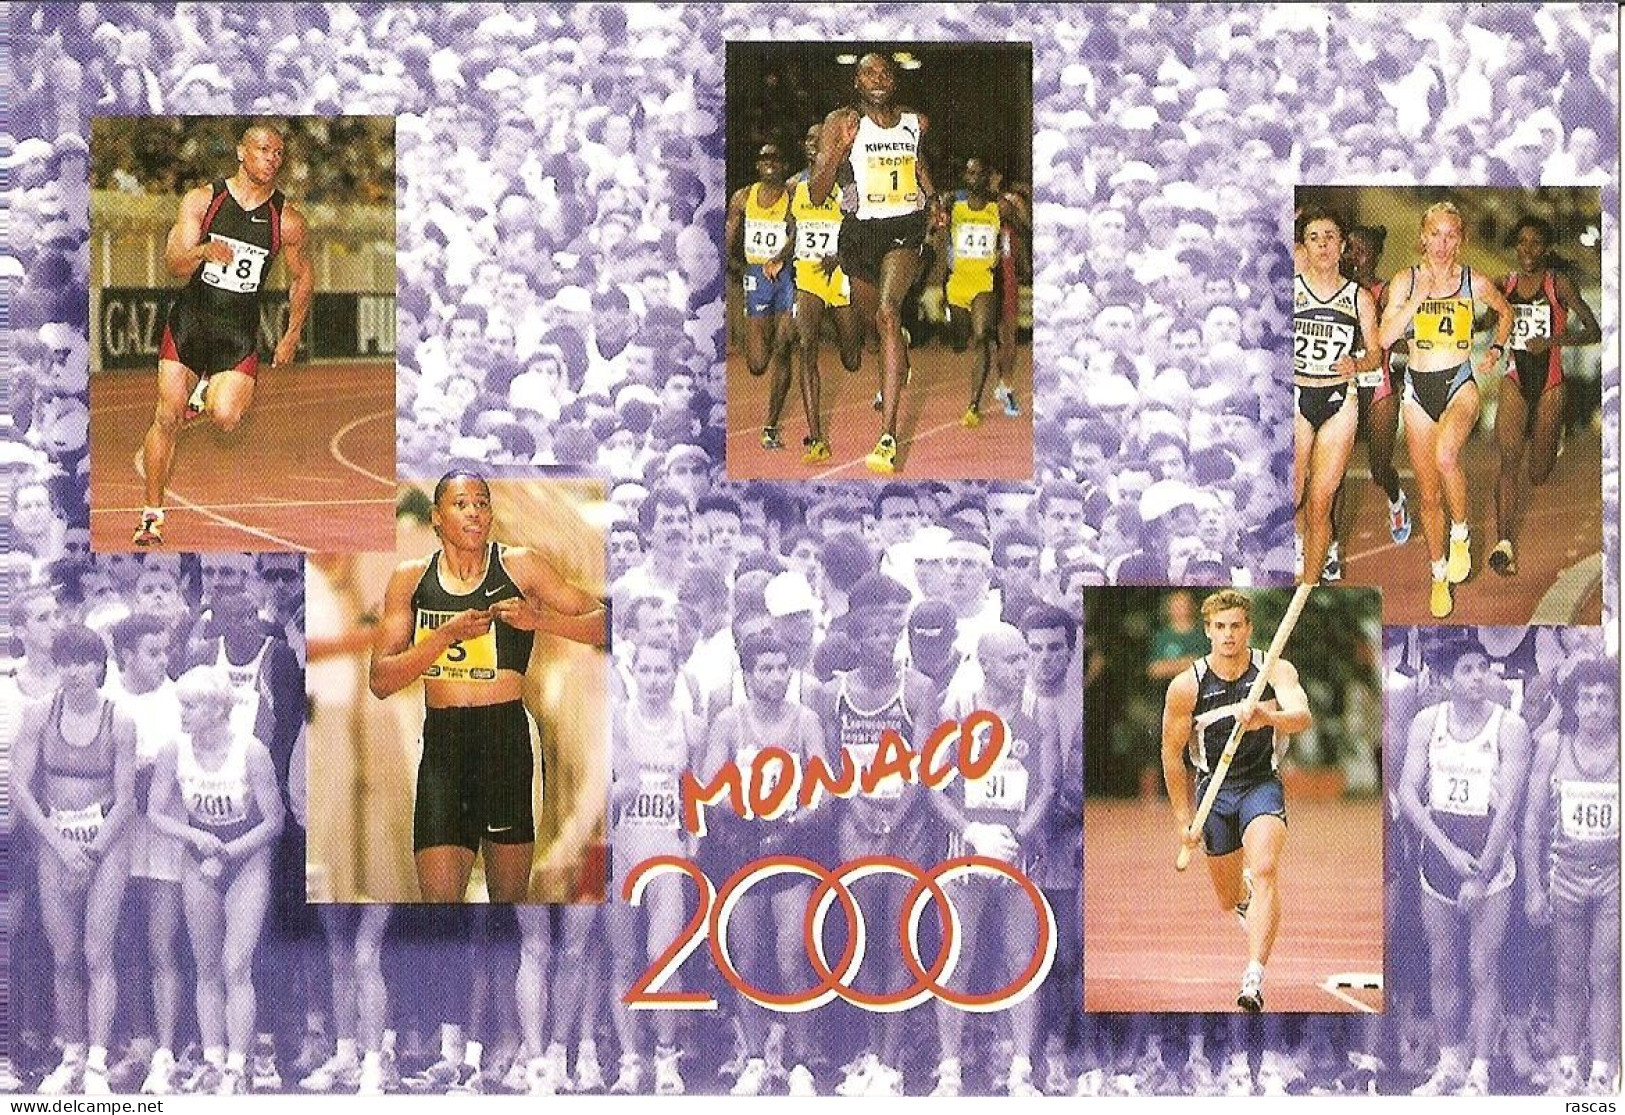 CPM - FEDERATION MONEGASQUE D' ATHLETISME - MONACO 2000 - MEETING GOLDEN LEAGUE HERCULIS - MARATHON DE MONACO - Athlétisme